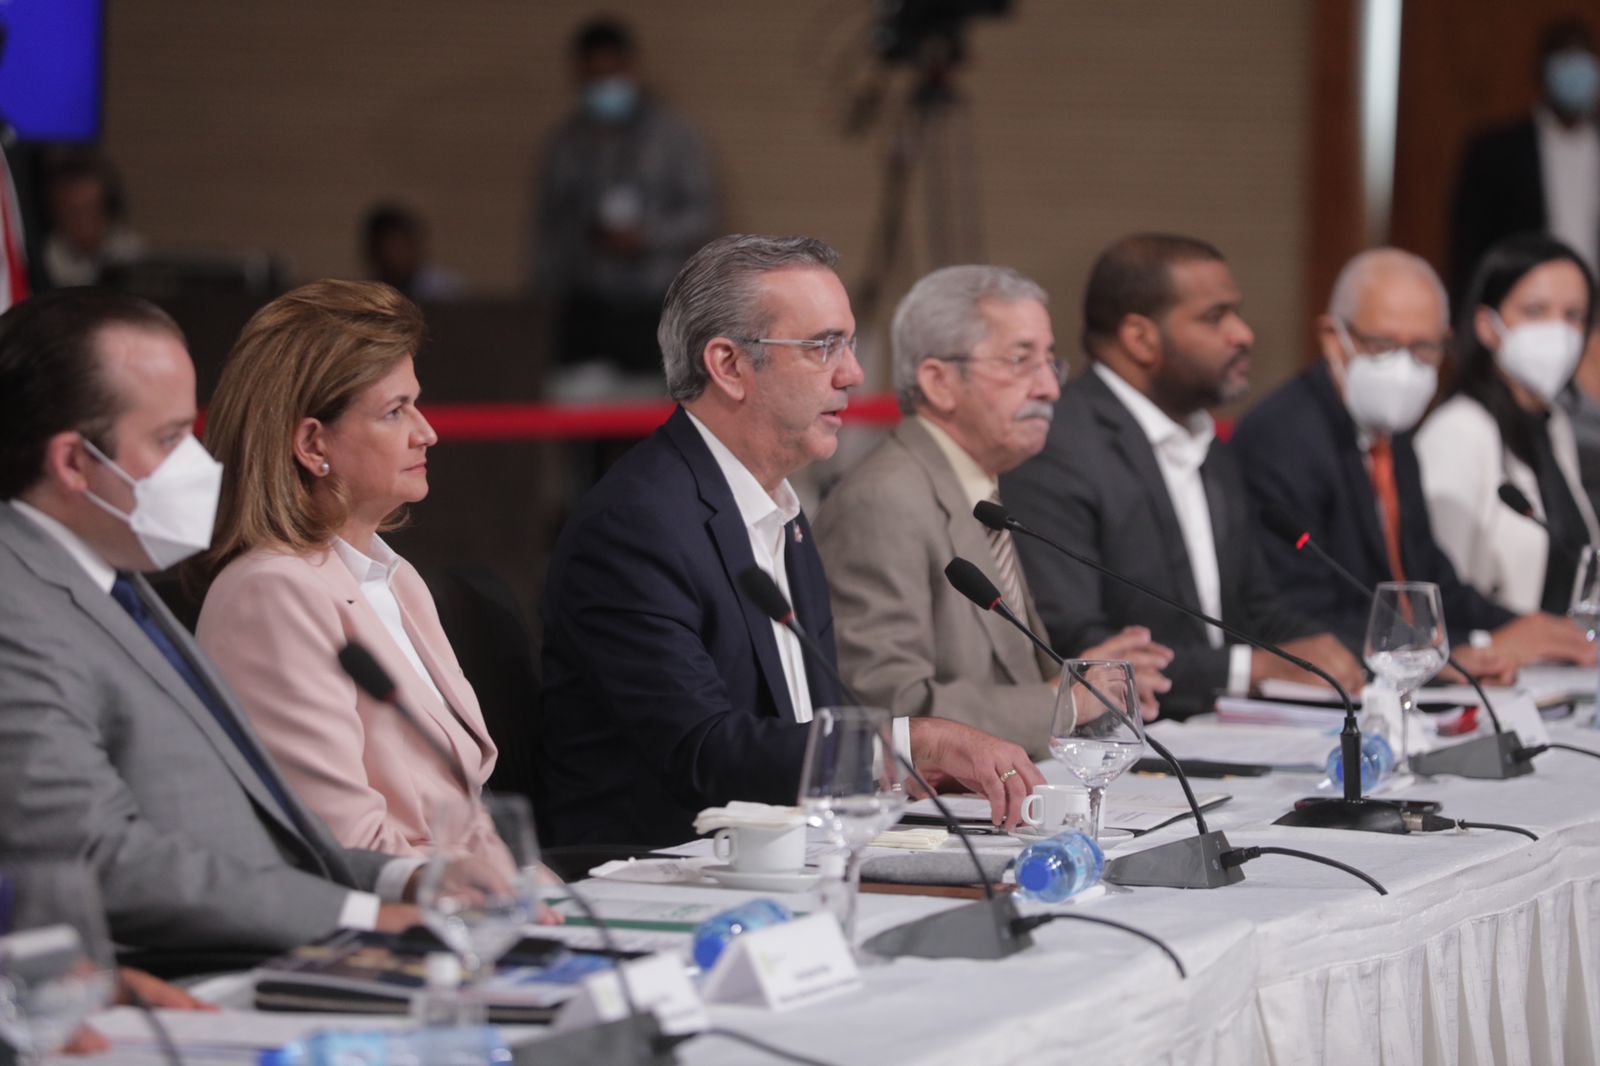 REPÚBLICA DOMINICANA: Presidente Abinader propone en Diálogo Nacional reforma a la Constitución para transformar la justicia